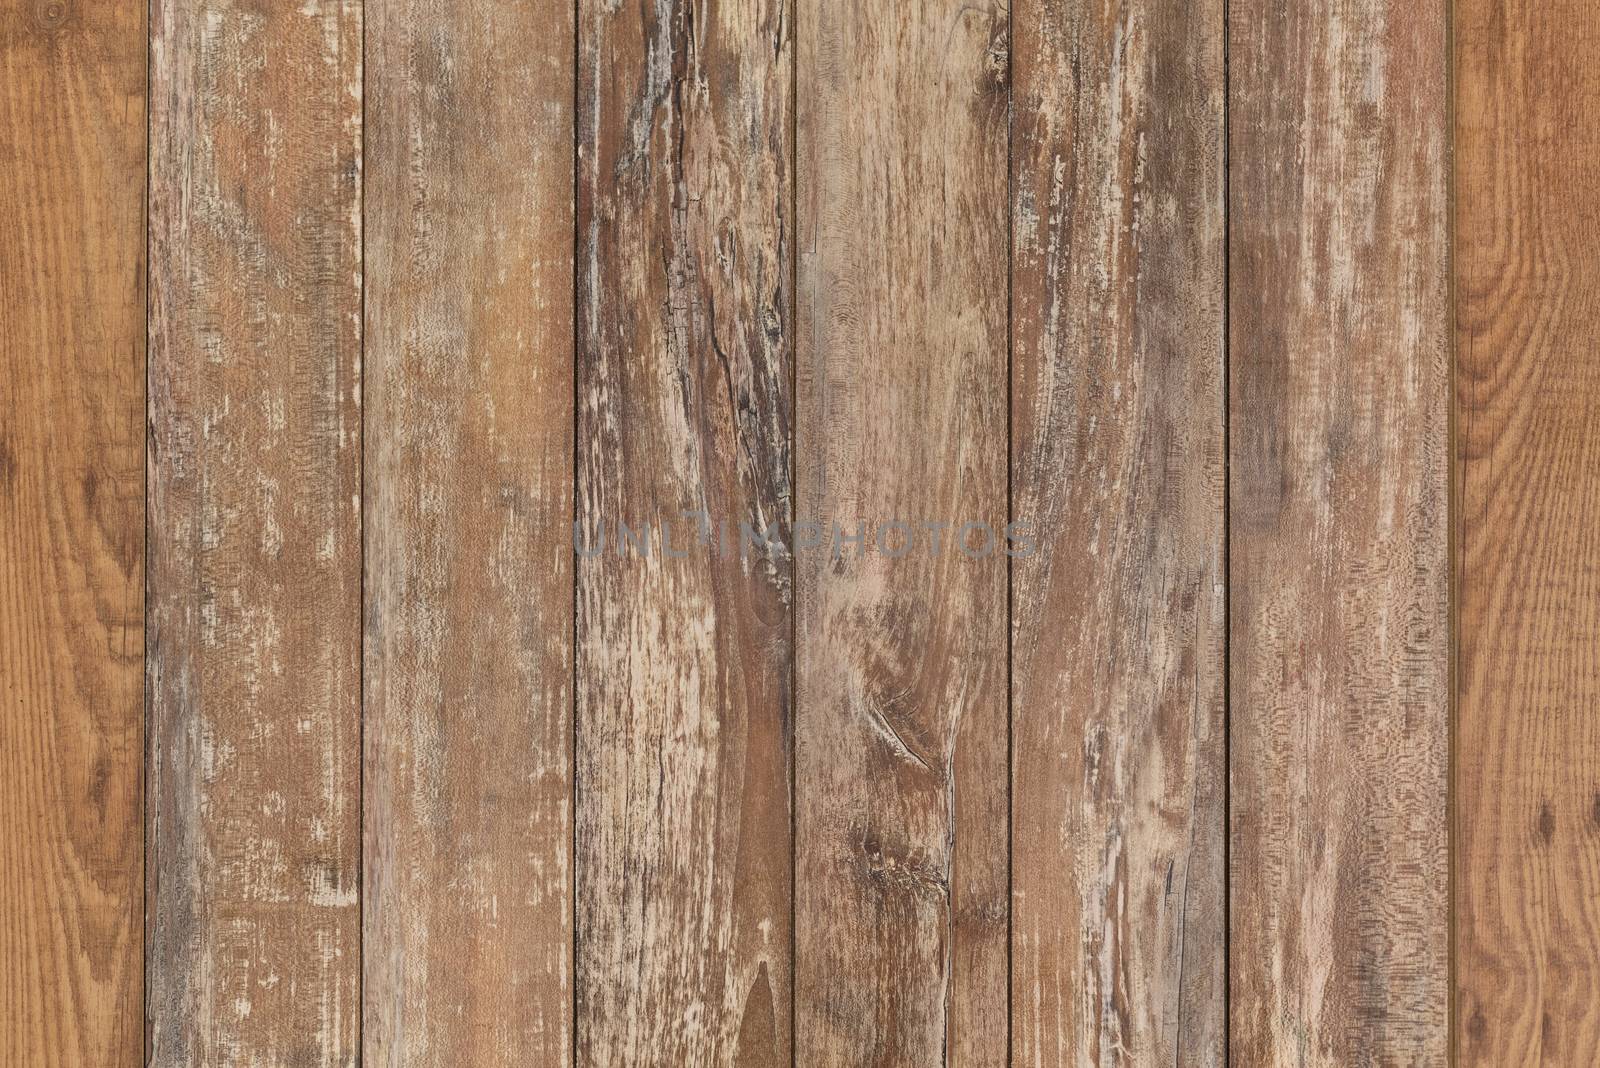 wooden floor or wall by dolgachov